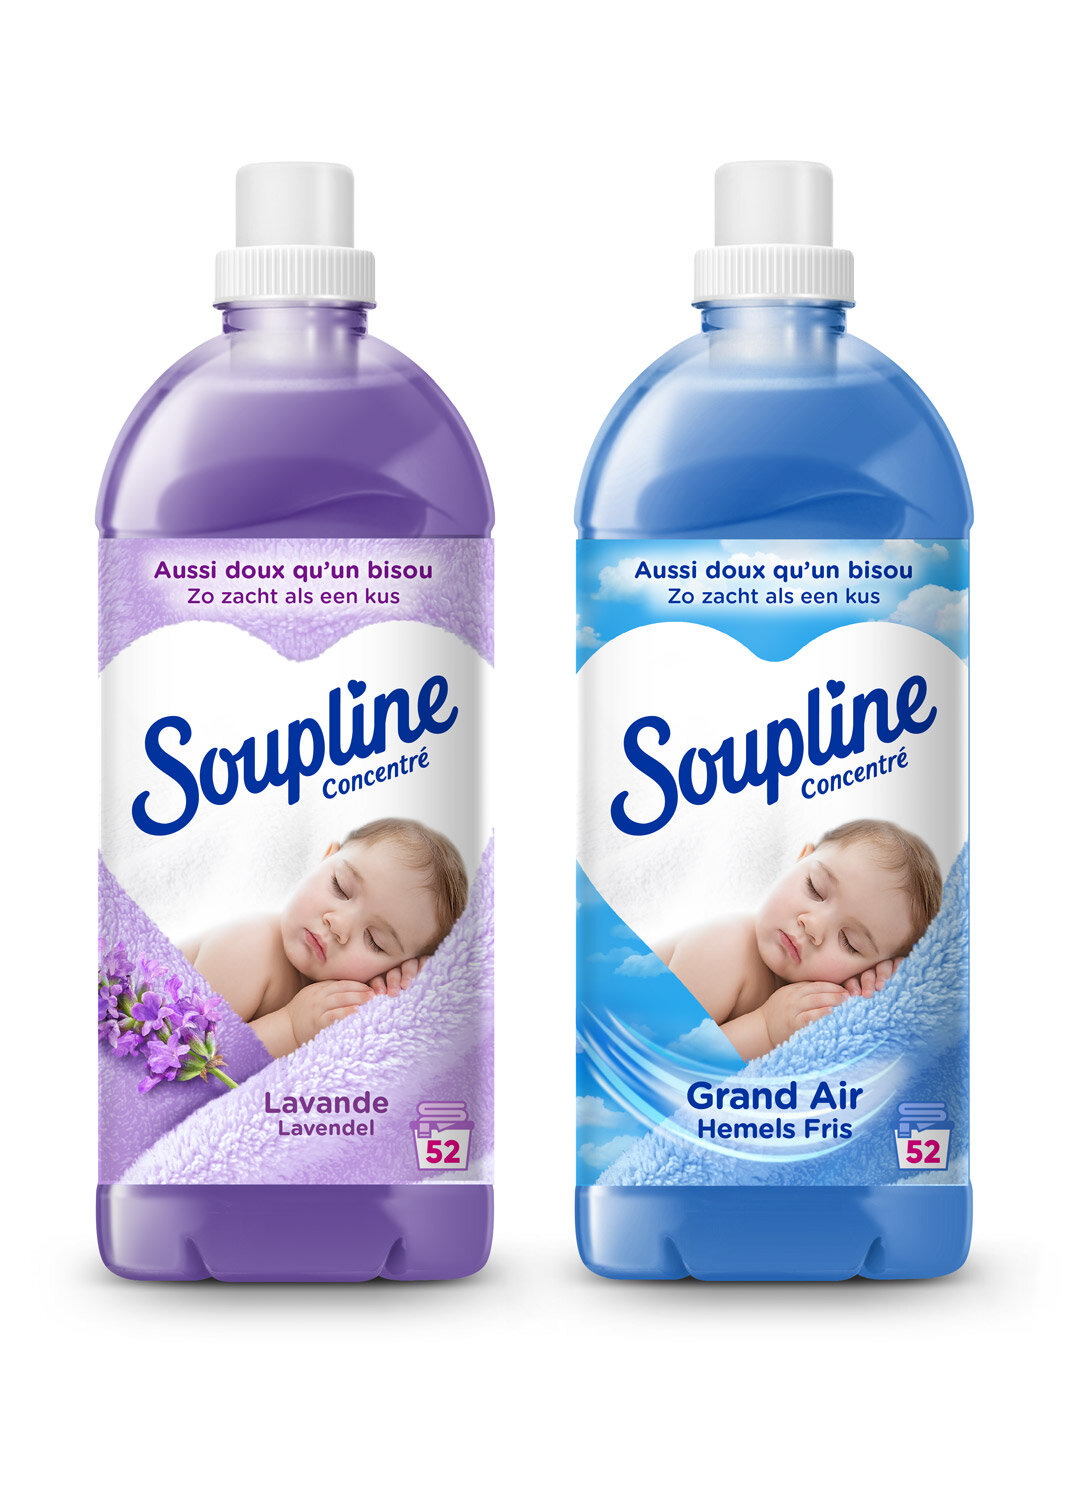 Photographe packaging bébé - Soupline — Commercial Kids Photographer - Lisa  Tichané